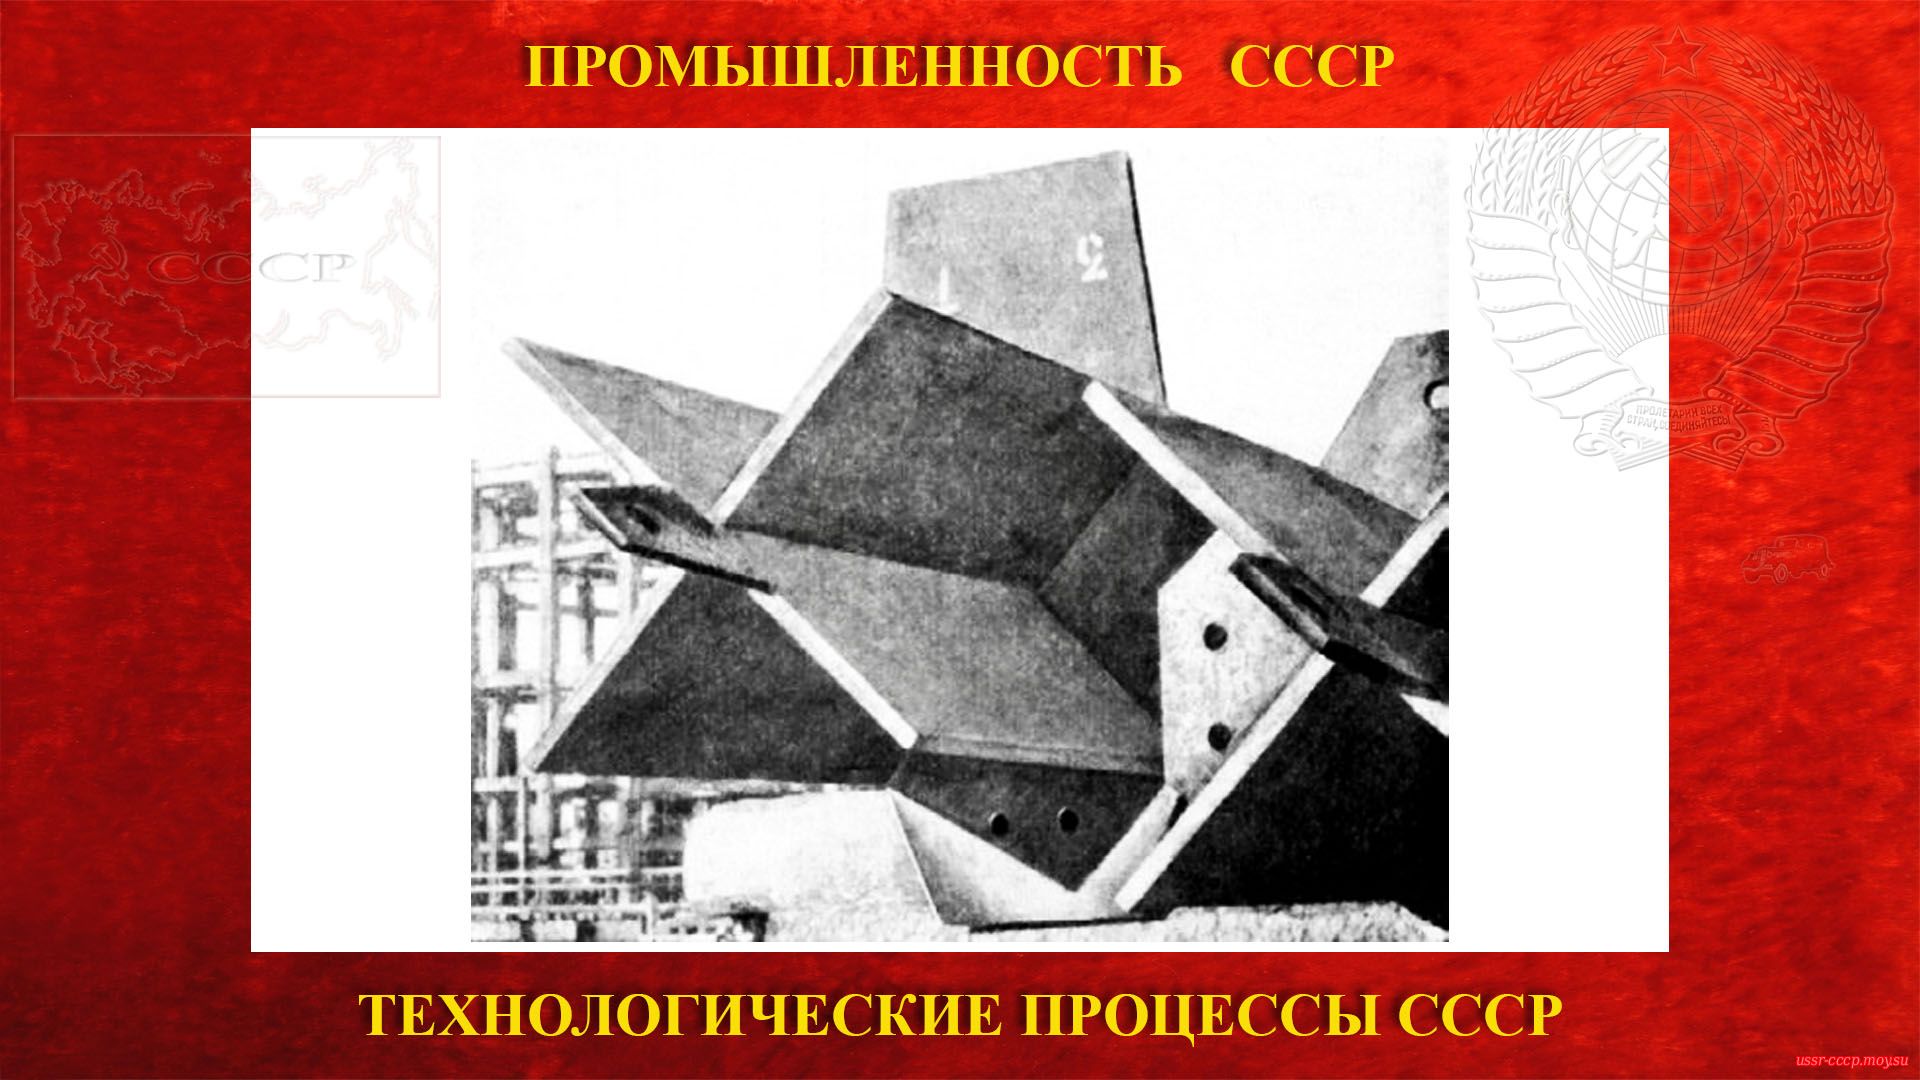 Металлические колонны крестовых сечений, впервые применявшиеся на строительстве высотного здания МГУ в 1949 году